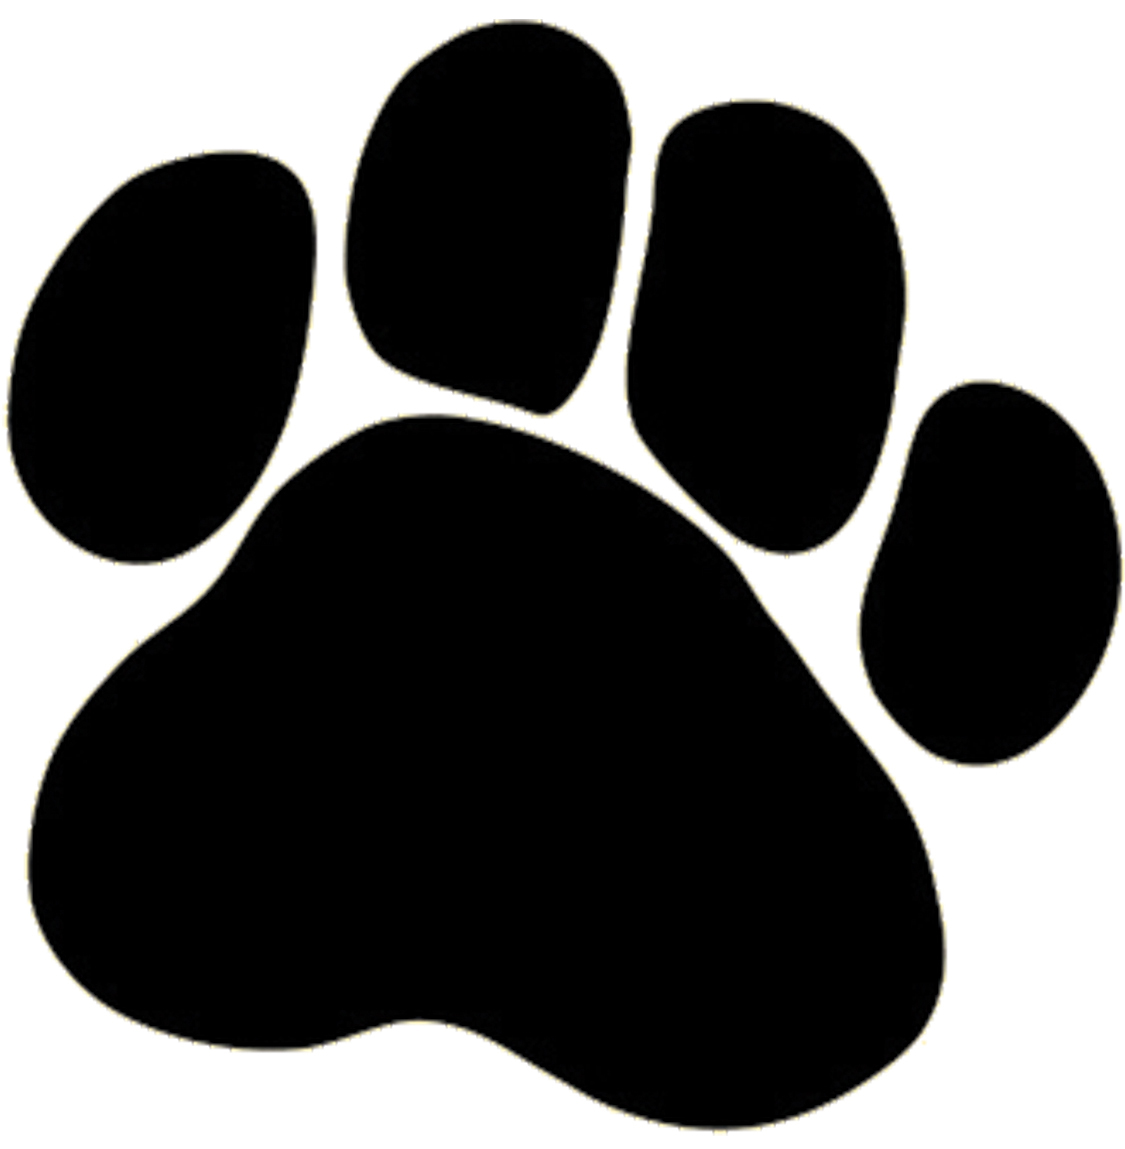 Dog Paw Image